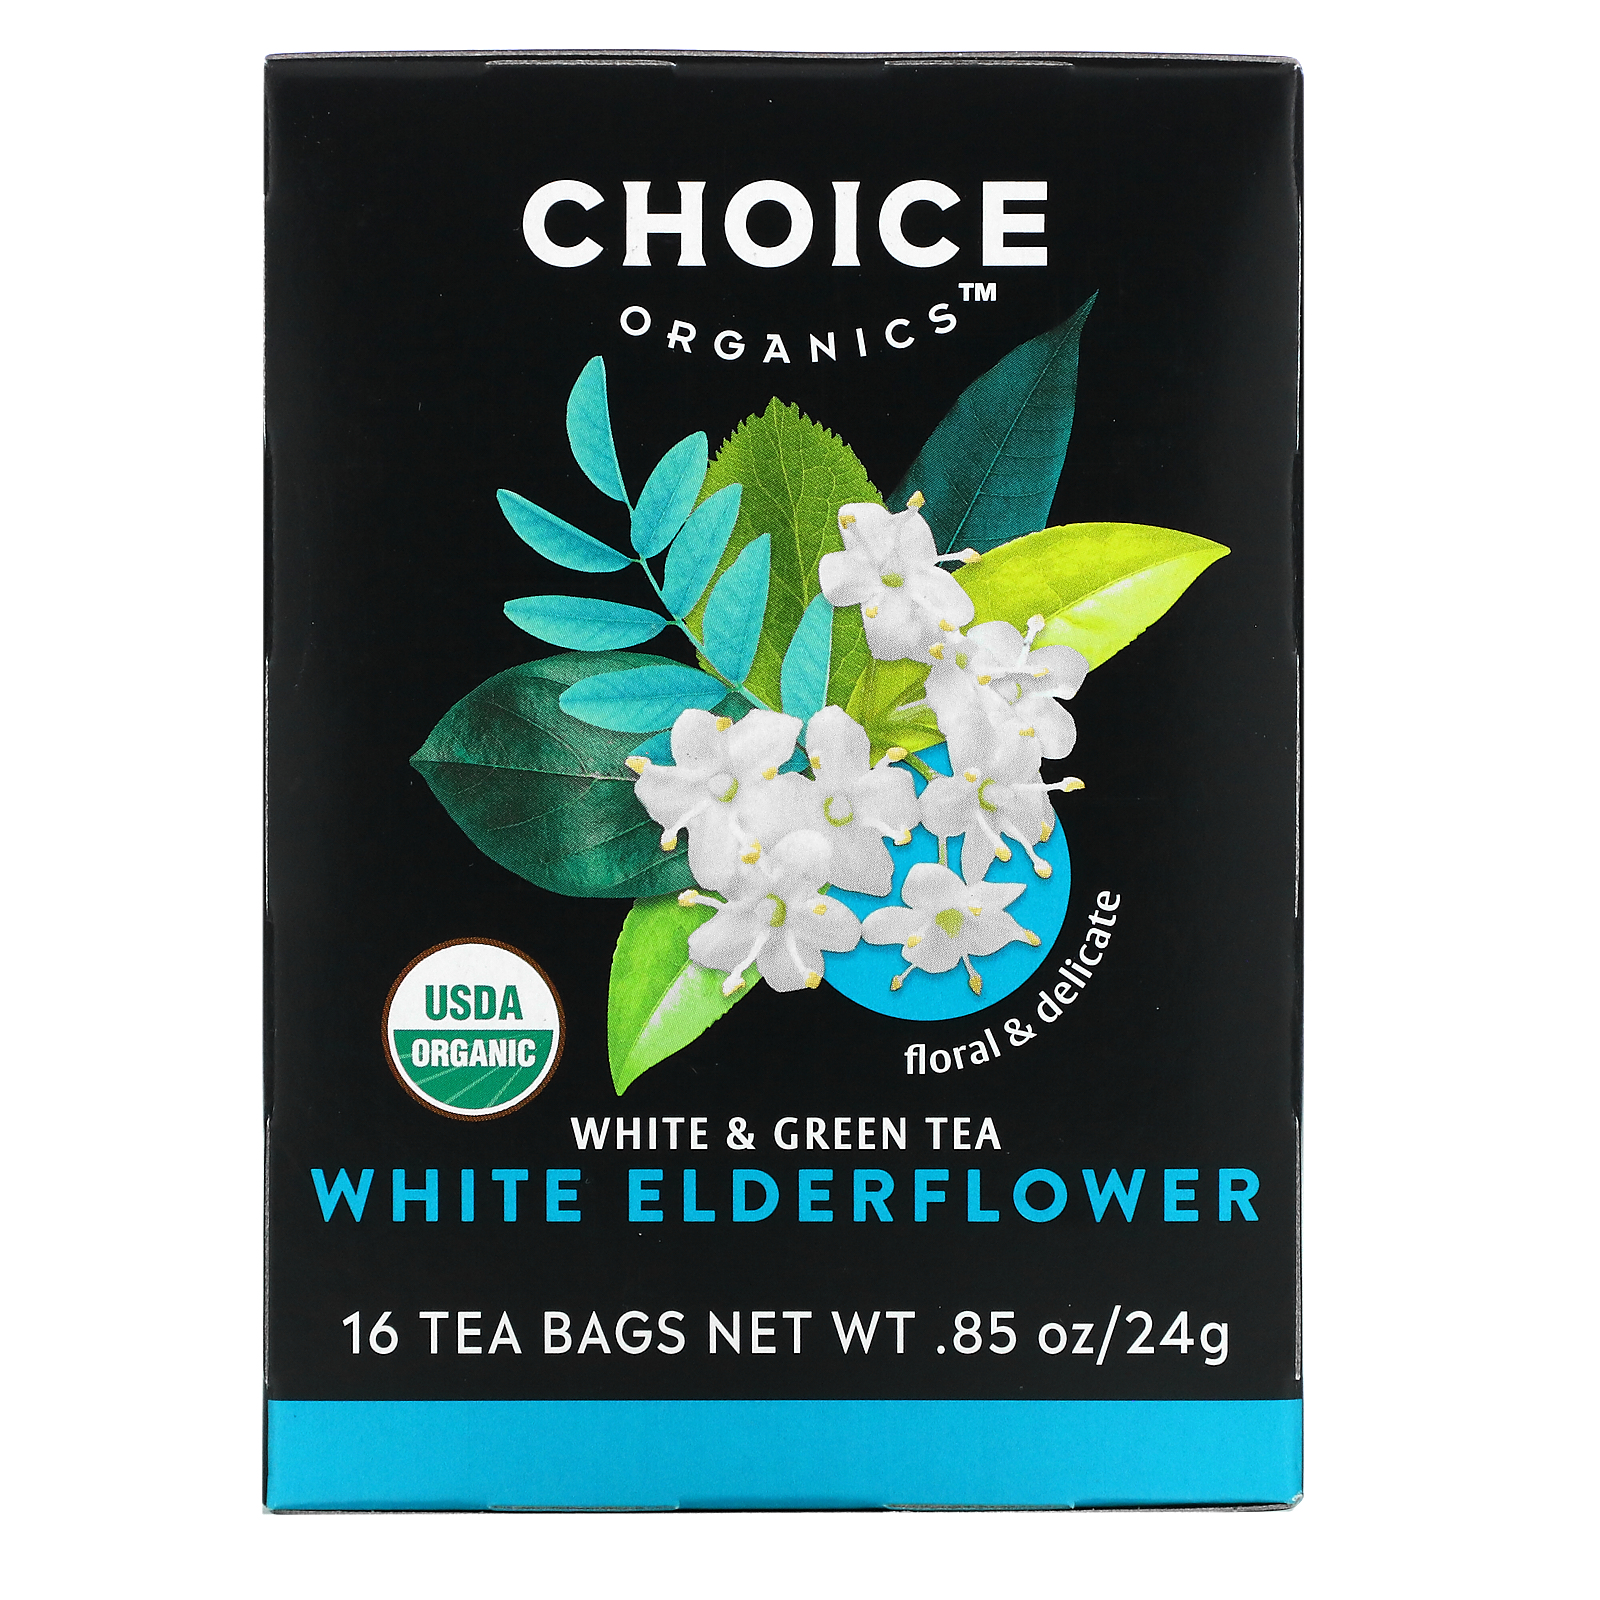 Choice Organic Teas, White &amp; Green Tea White Elderflower, 16 Tea Bags, 0.85 oz (24 g) Each